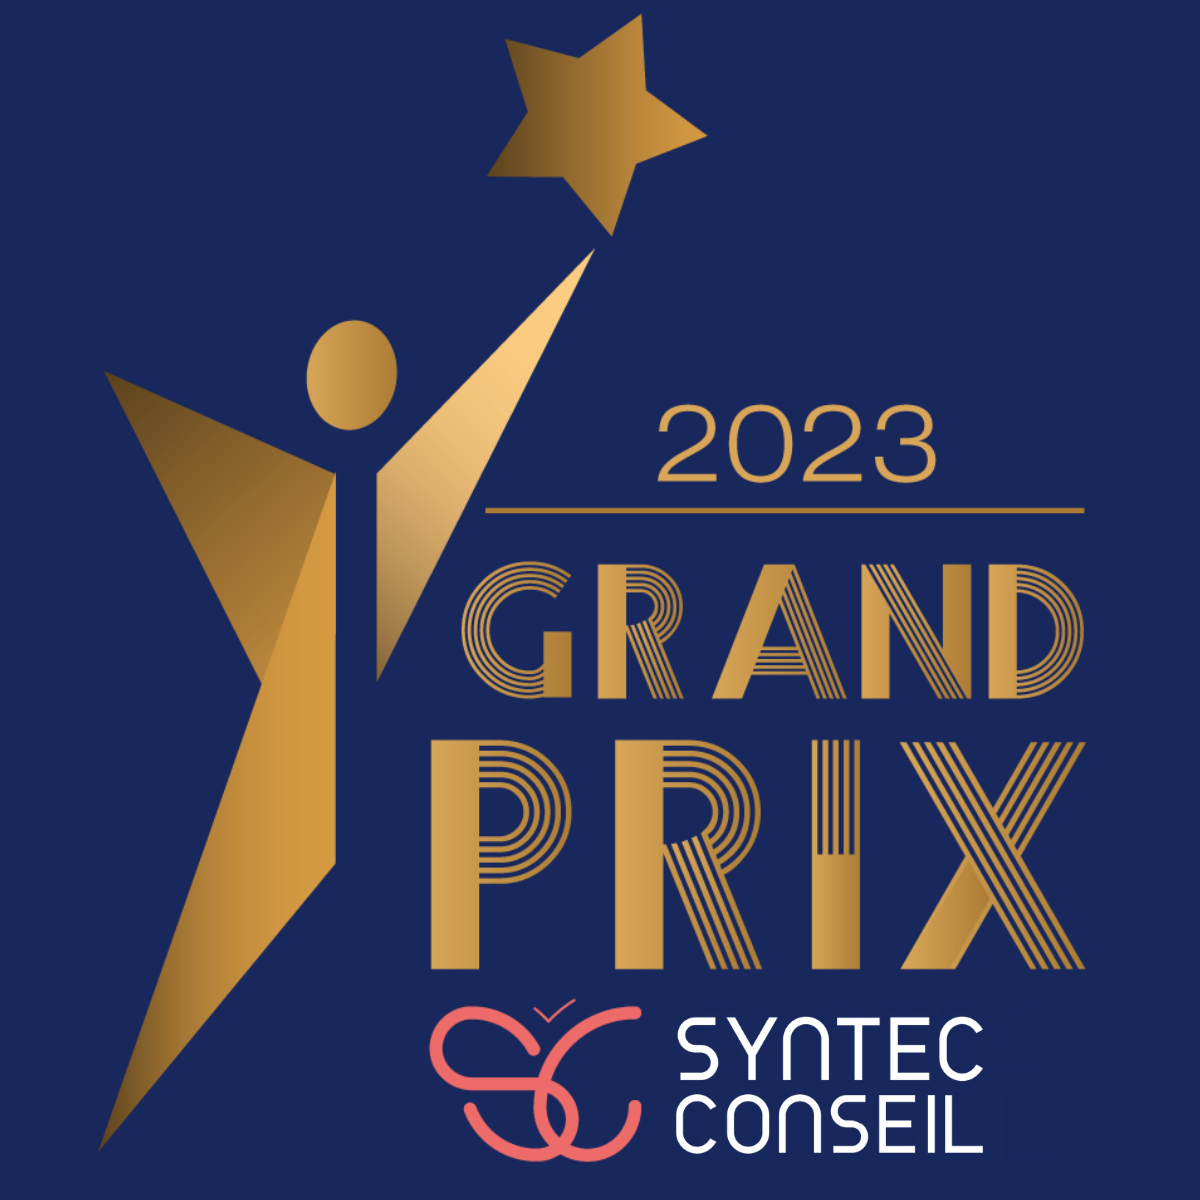 Avec 366, prix argent au Grand Prix Syntec Conseil 2023, catégorie Data Services et Technologie.